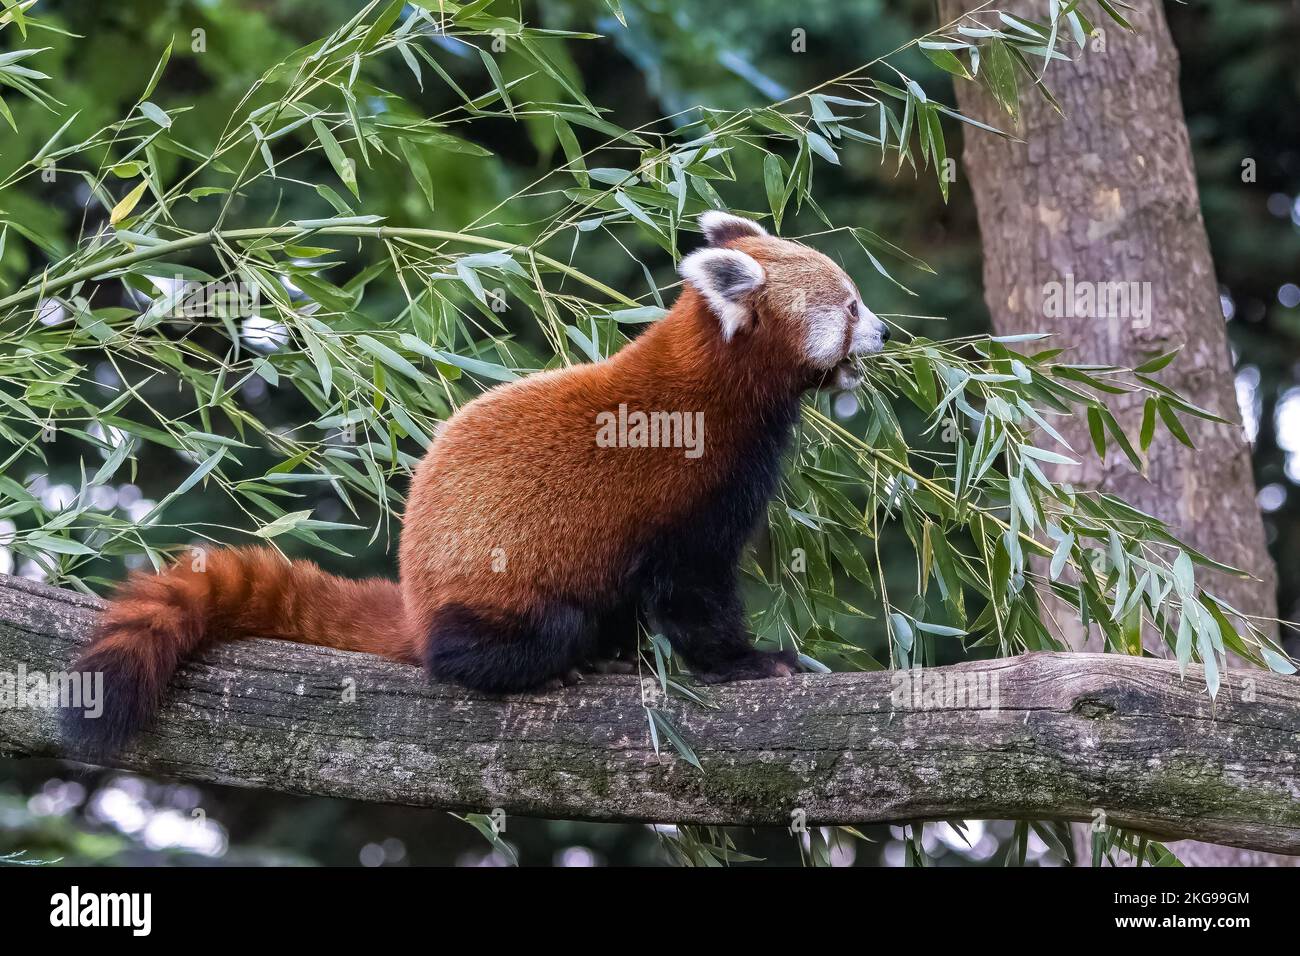 Un panda rouge, Ailurus fulgens, manger du bambou Banque D'Images